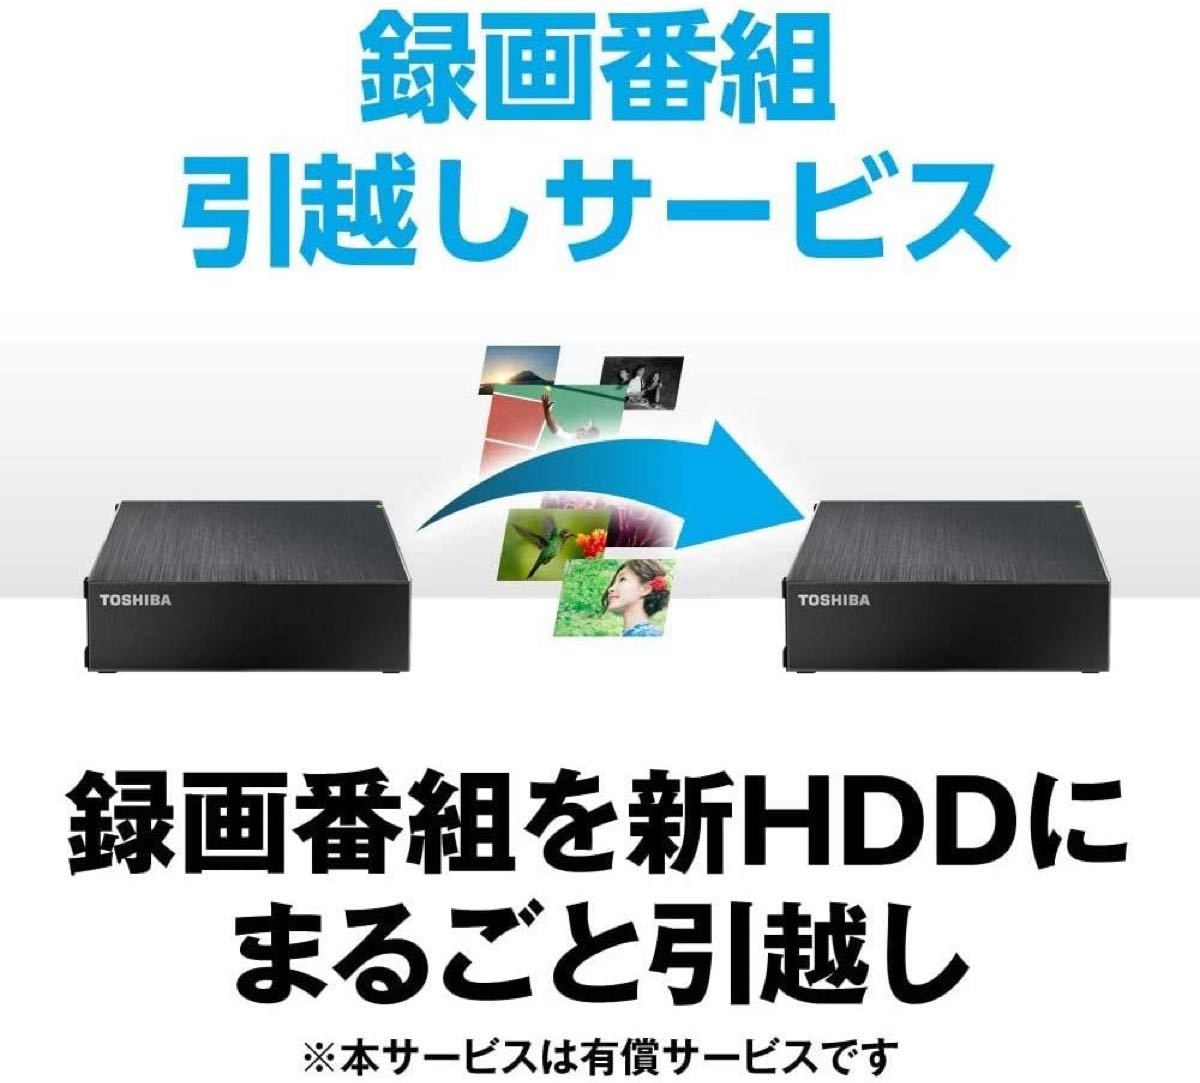 HD-TDA6U3-B [HD-TDAシリーズ 6TB ブラック] 外付けハードディスク